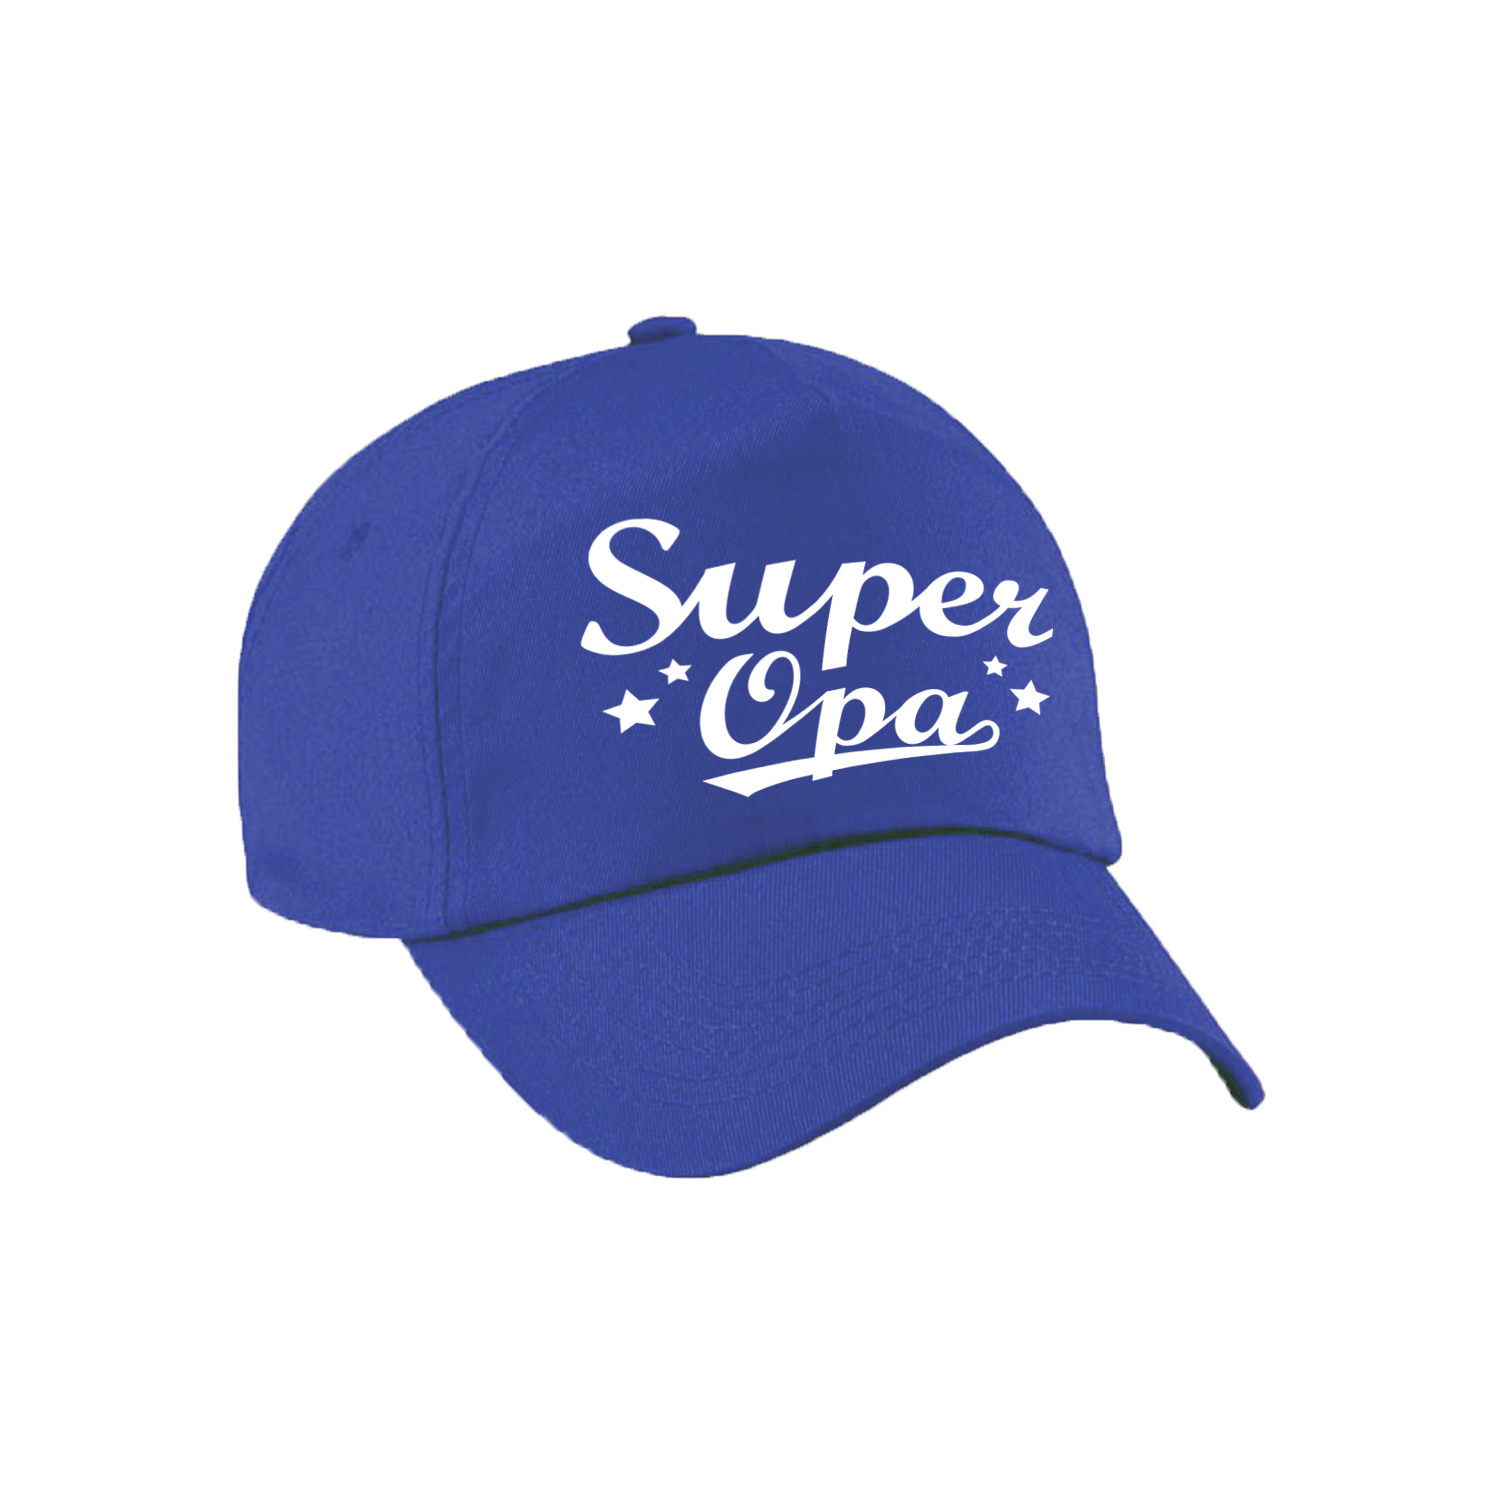 Super opa cadeau pet /cap blauw voor volwassenen